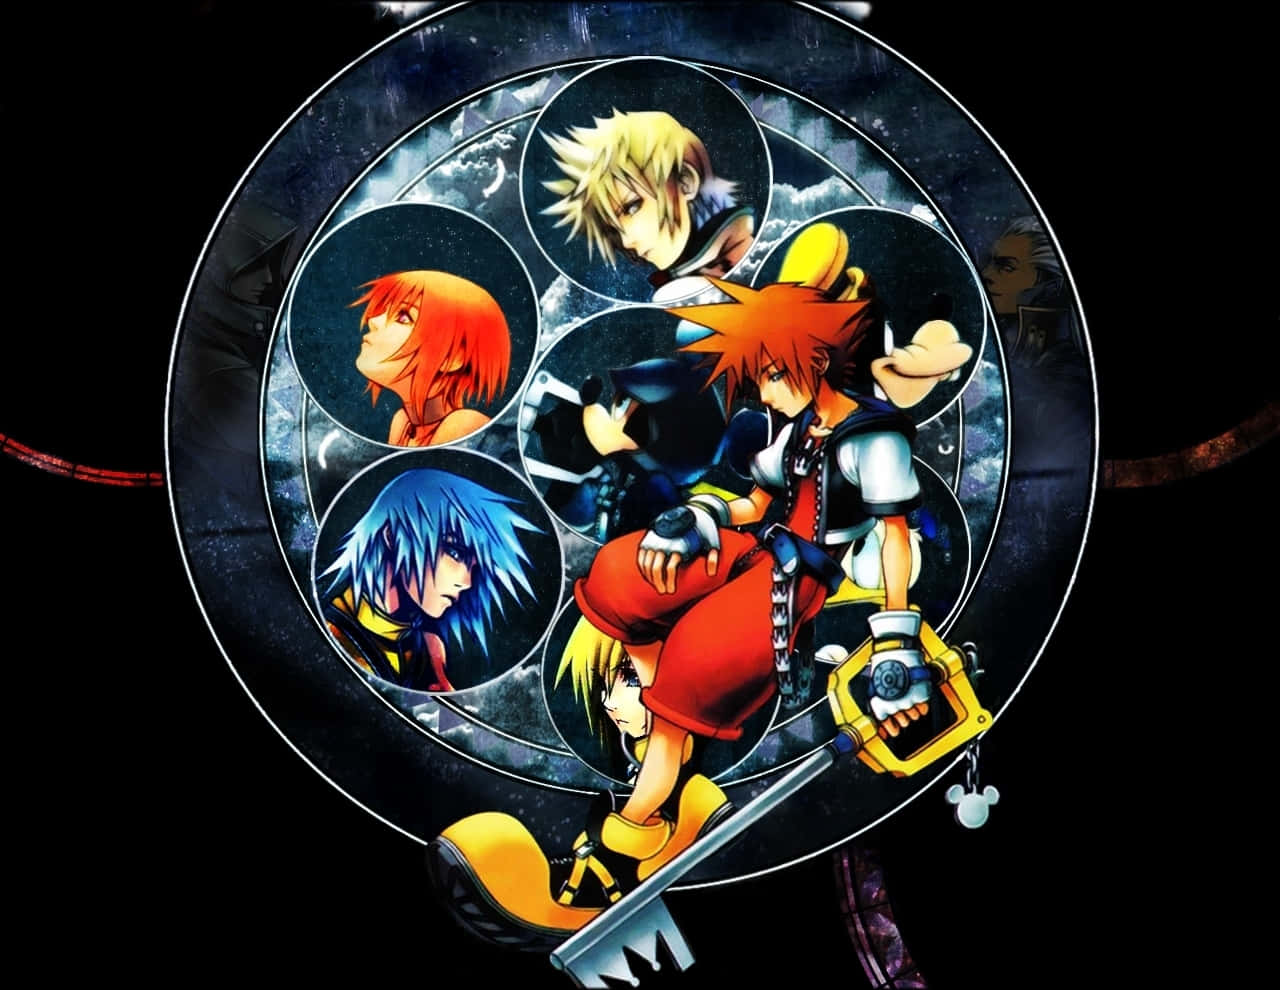 Sora,donald Y Goofy Se Embarcan En Un Viaje Mágico En Kingdom Hearts.